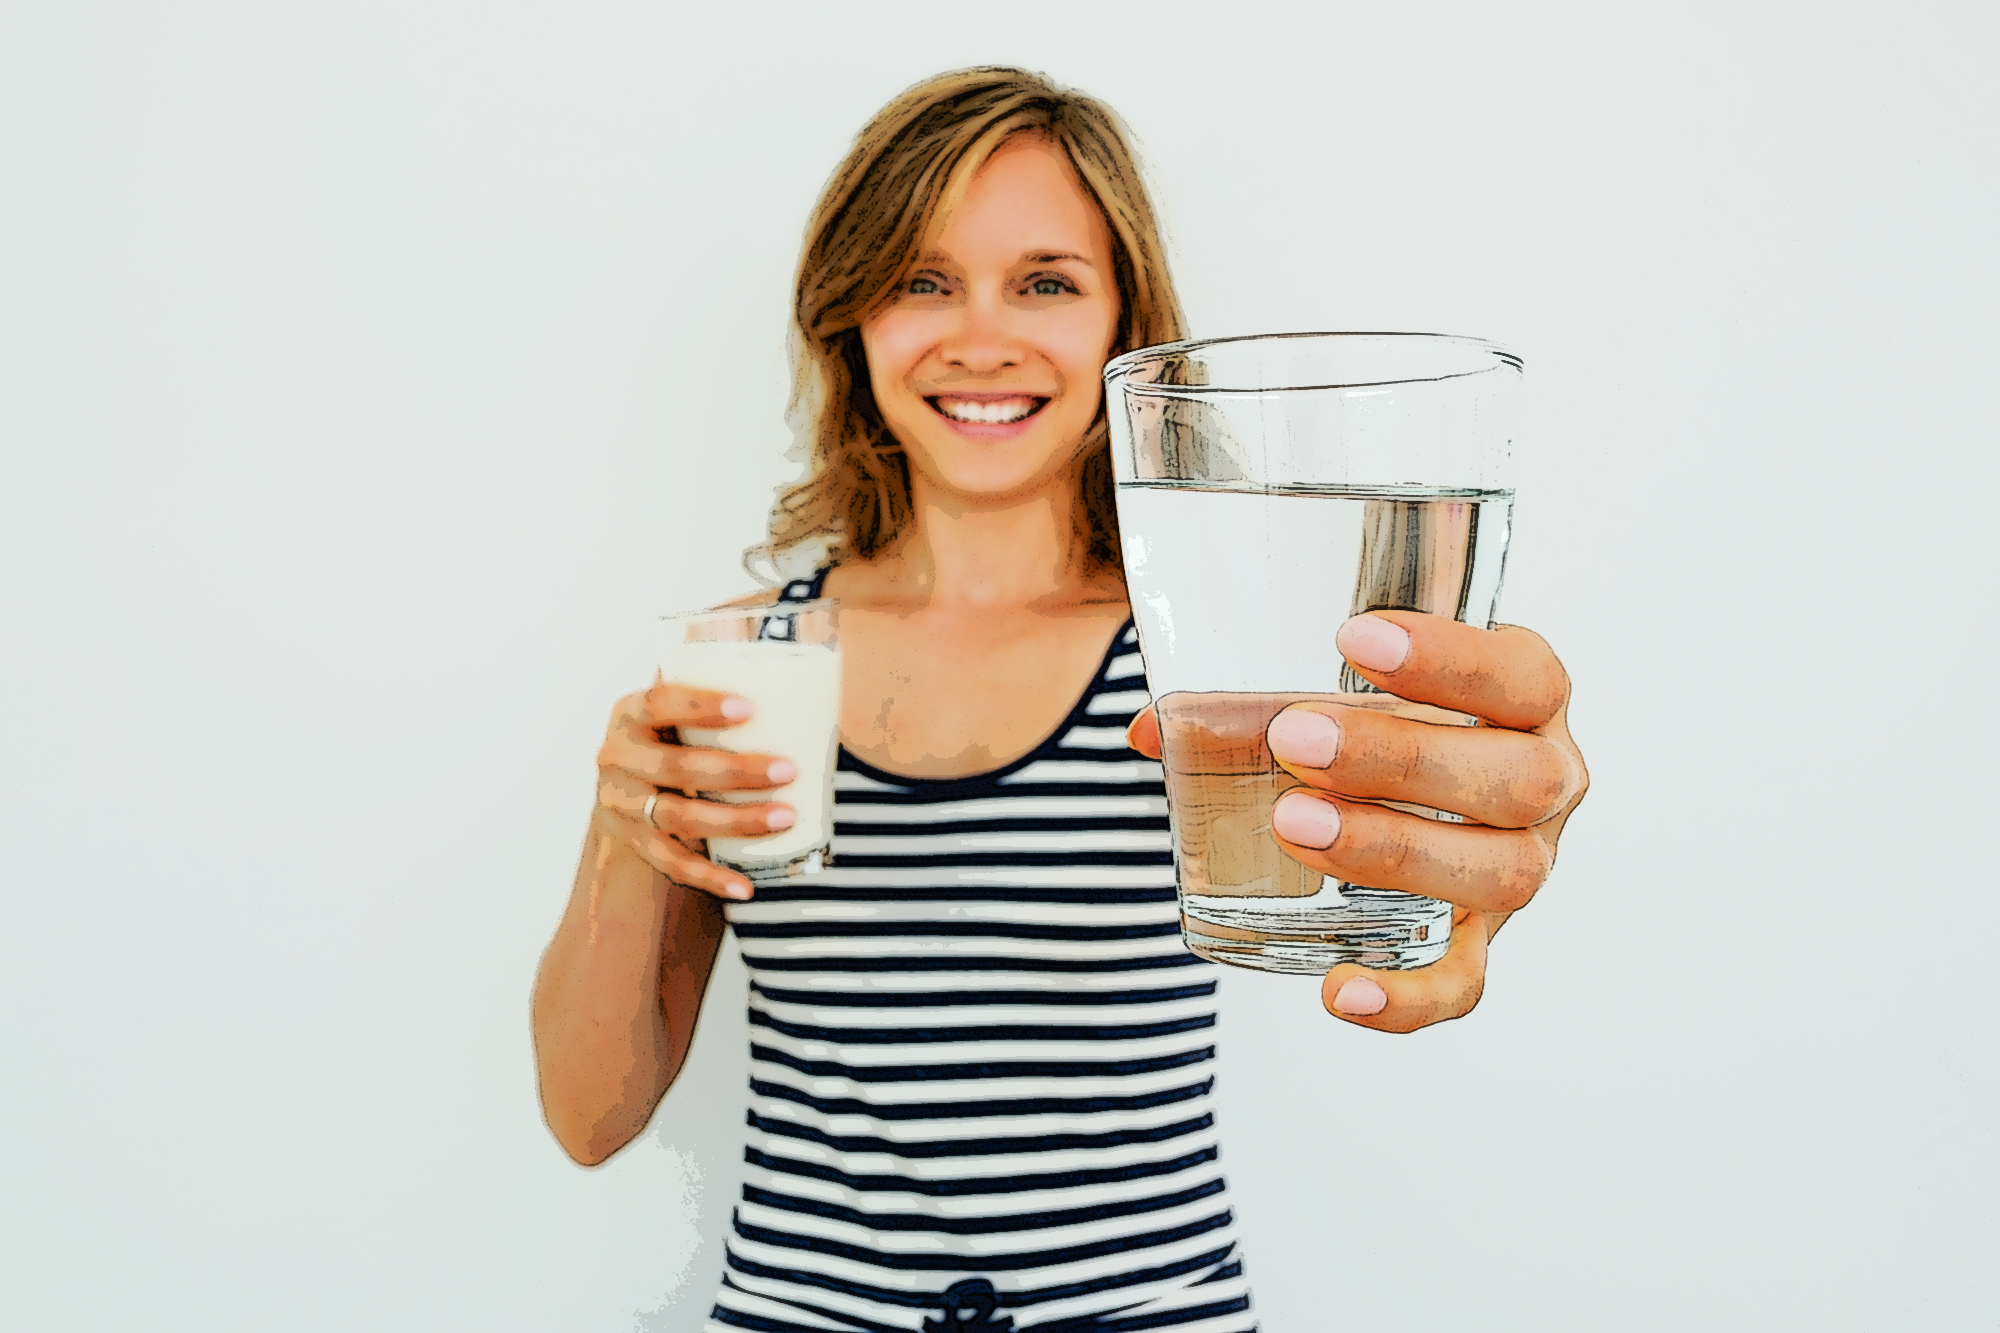 Набирает стакан воды. Девушка со стаканом воды. Человек со стаканом воды. Фотосессия со стаканом воды. Женщина пьет воду.